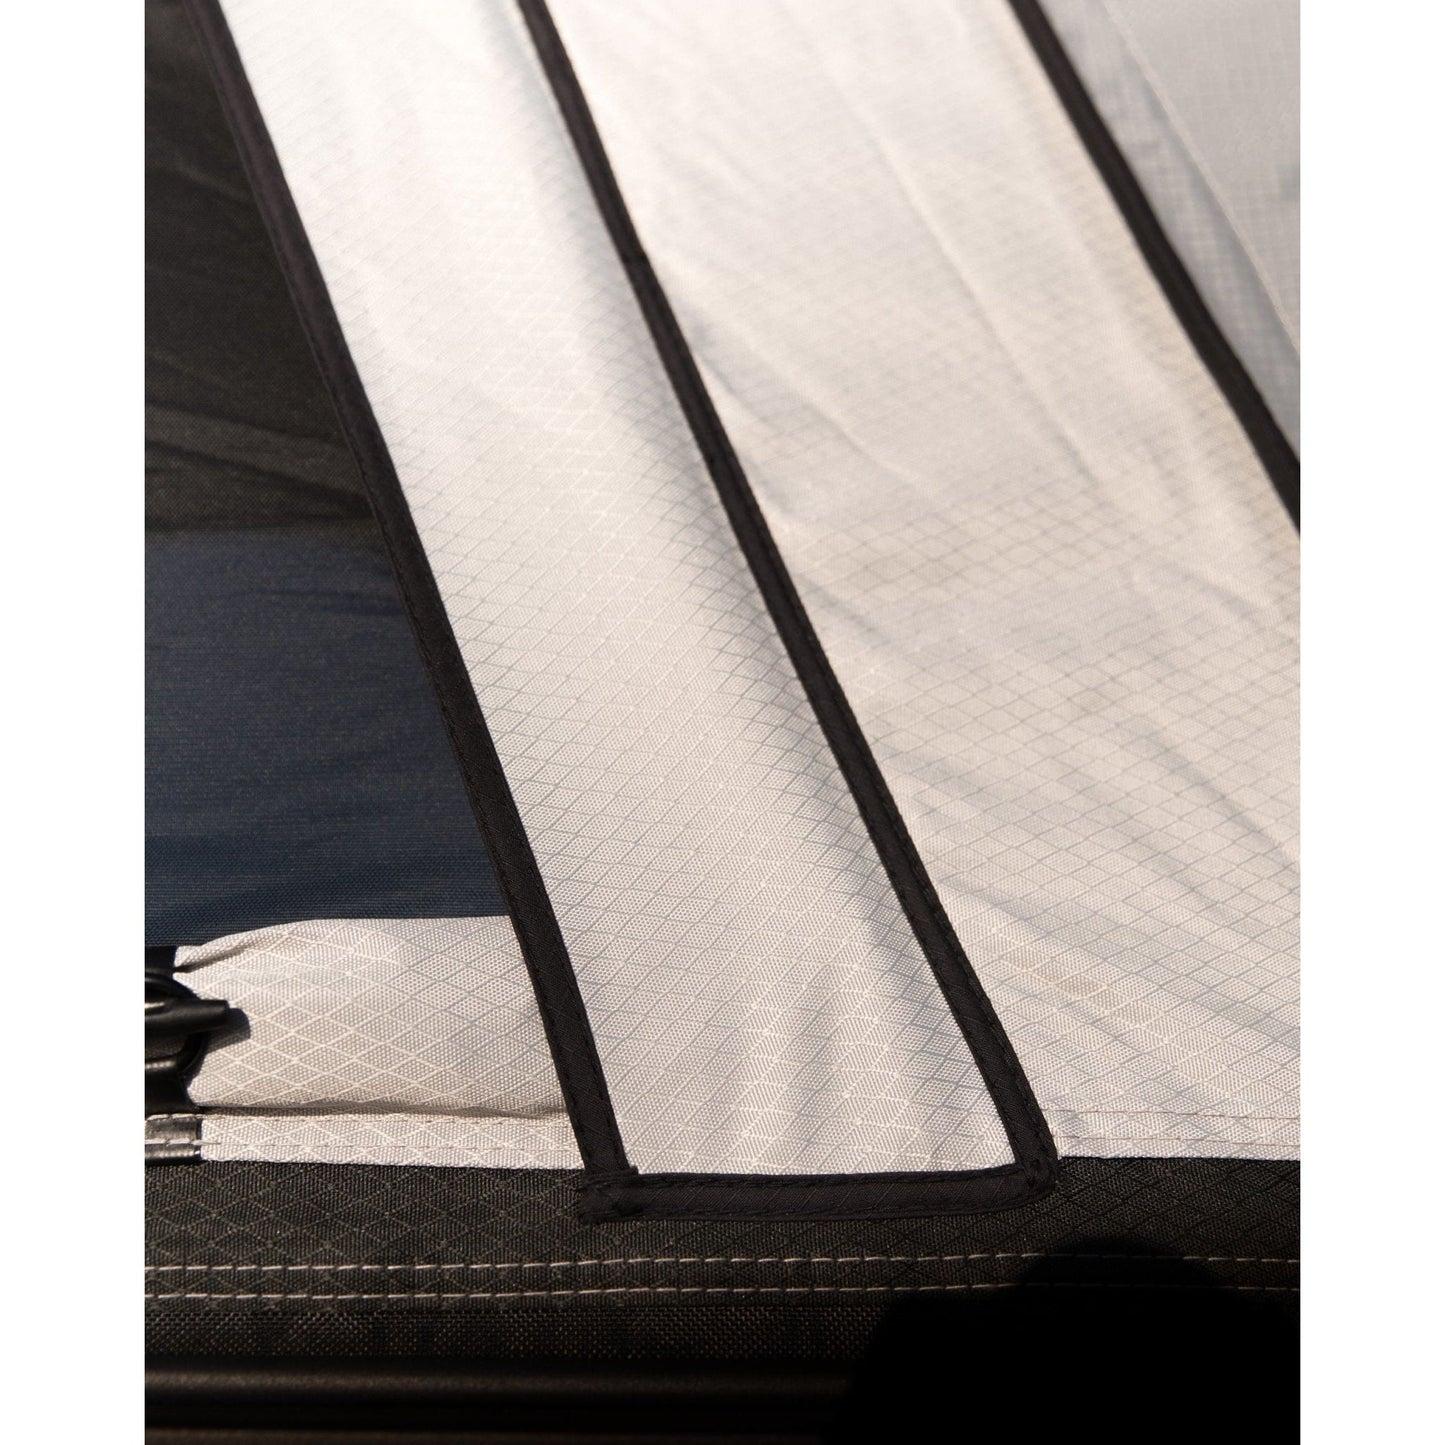 Feldon Shelter Hawk's Nest Hard Shell Rooftop Tent - Standard - Shop Feldon Shelter | Stoke Equipment Co Nelson